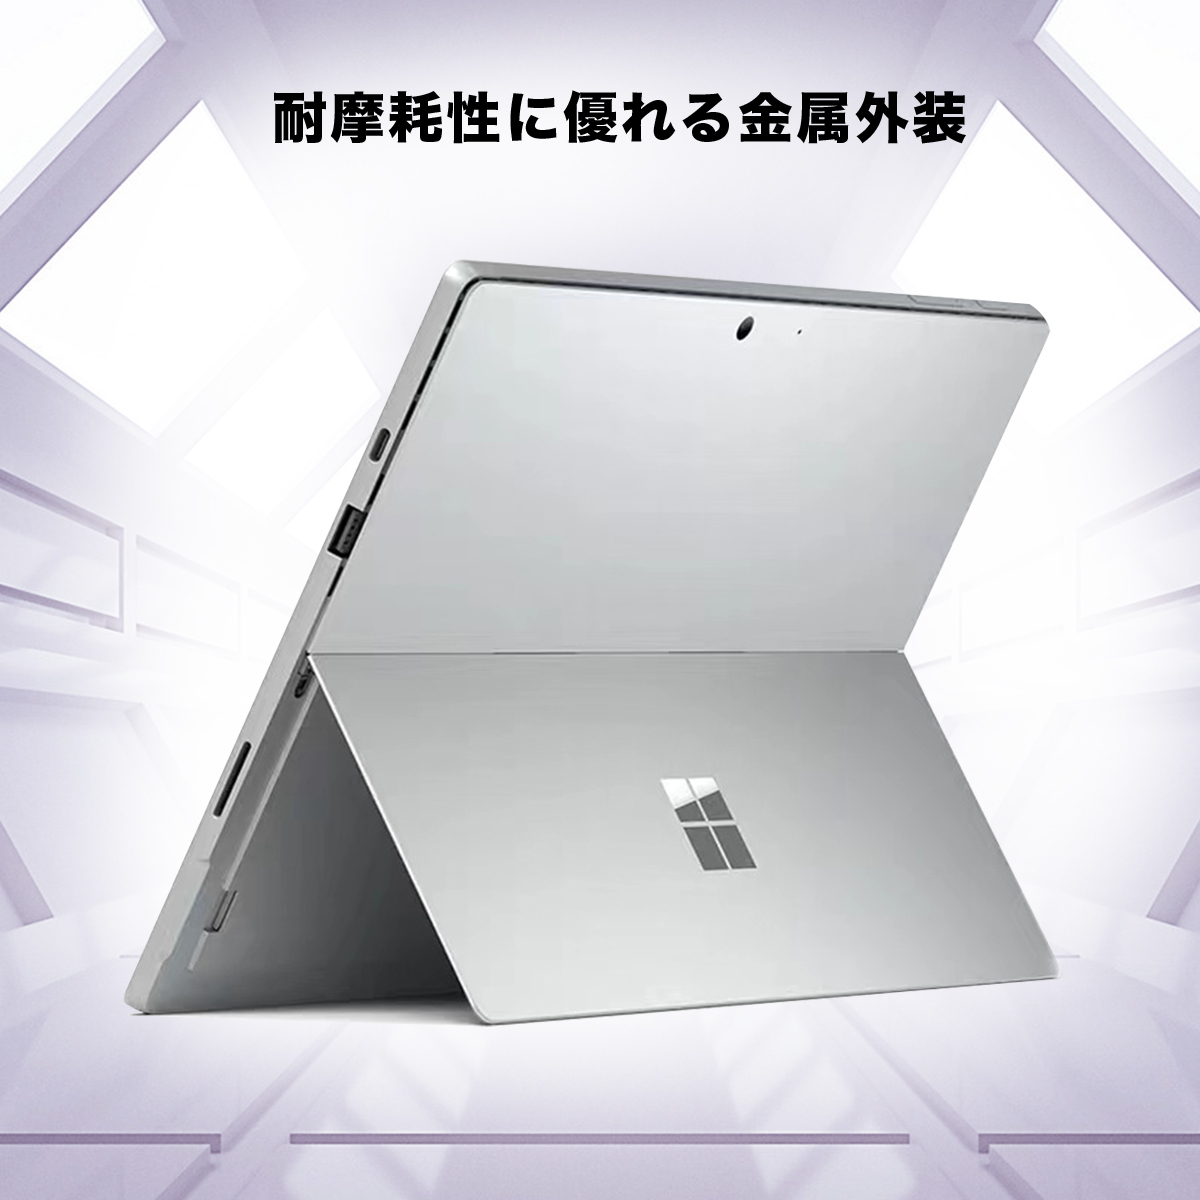 Win11搭載 Surface pro4 中古タブレット PCサーフェスノートパソコン